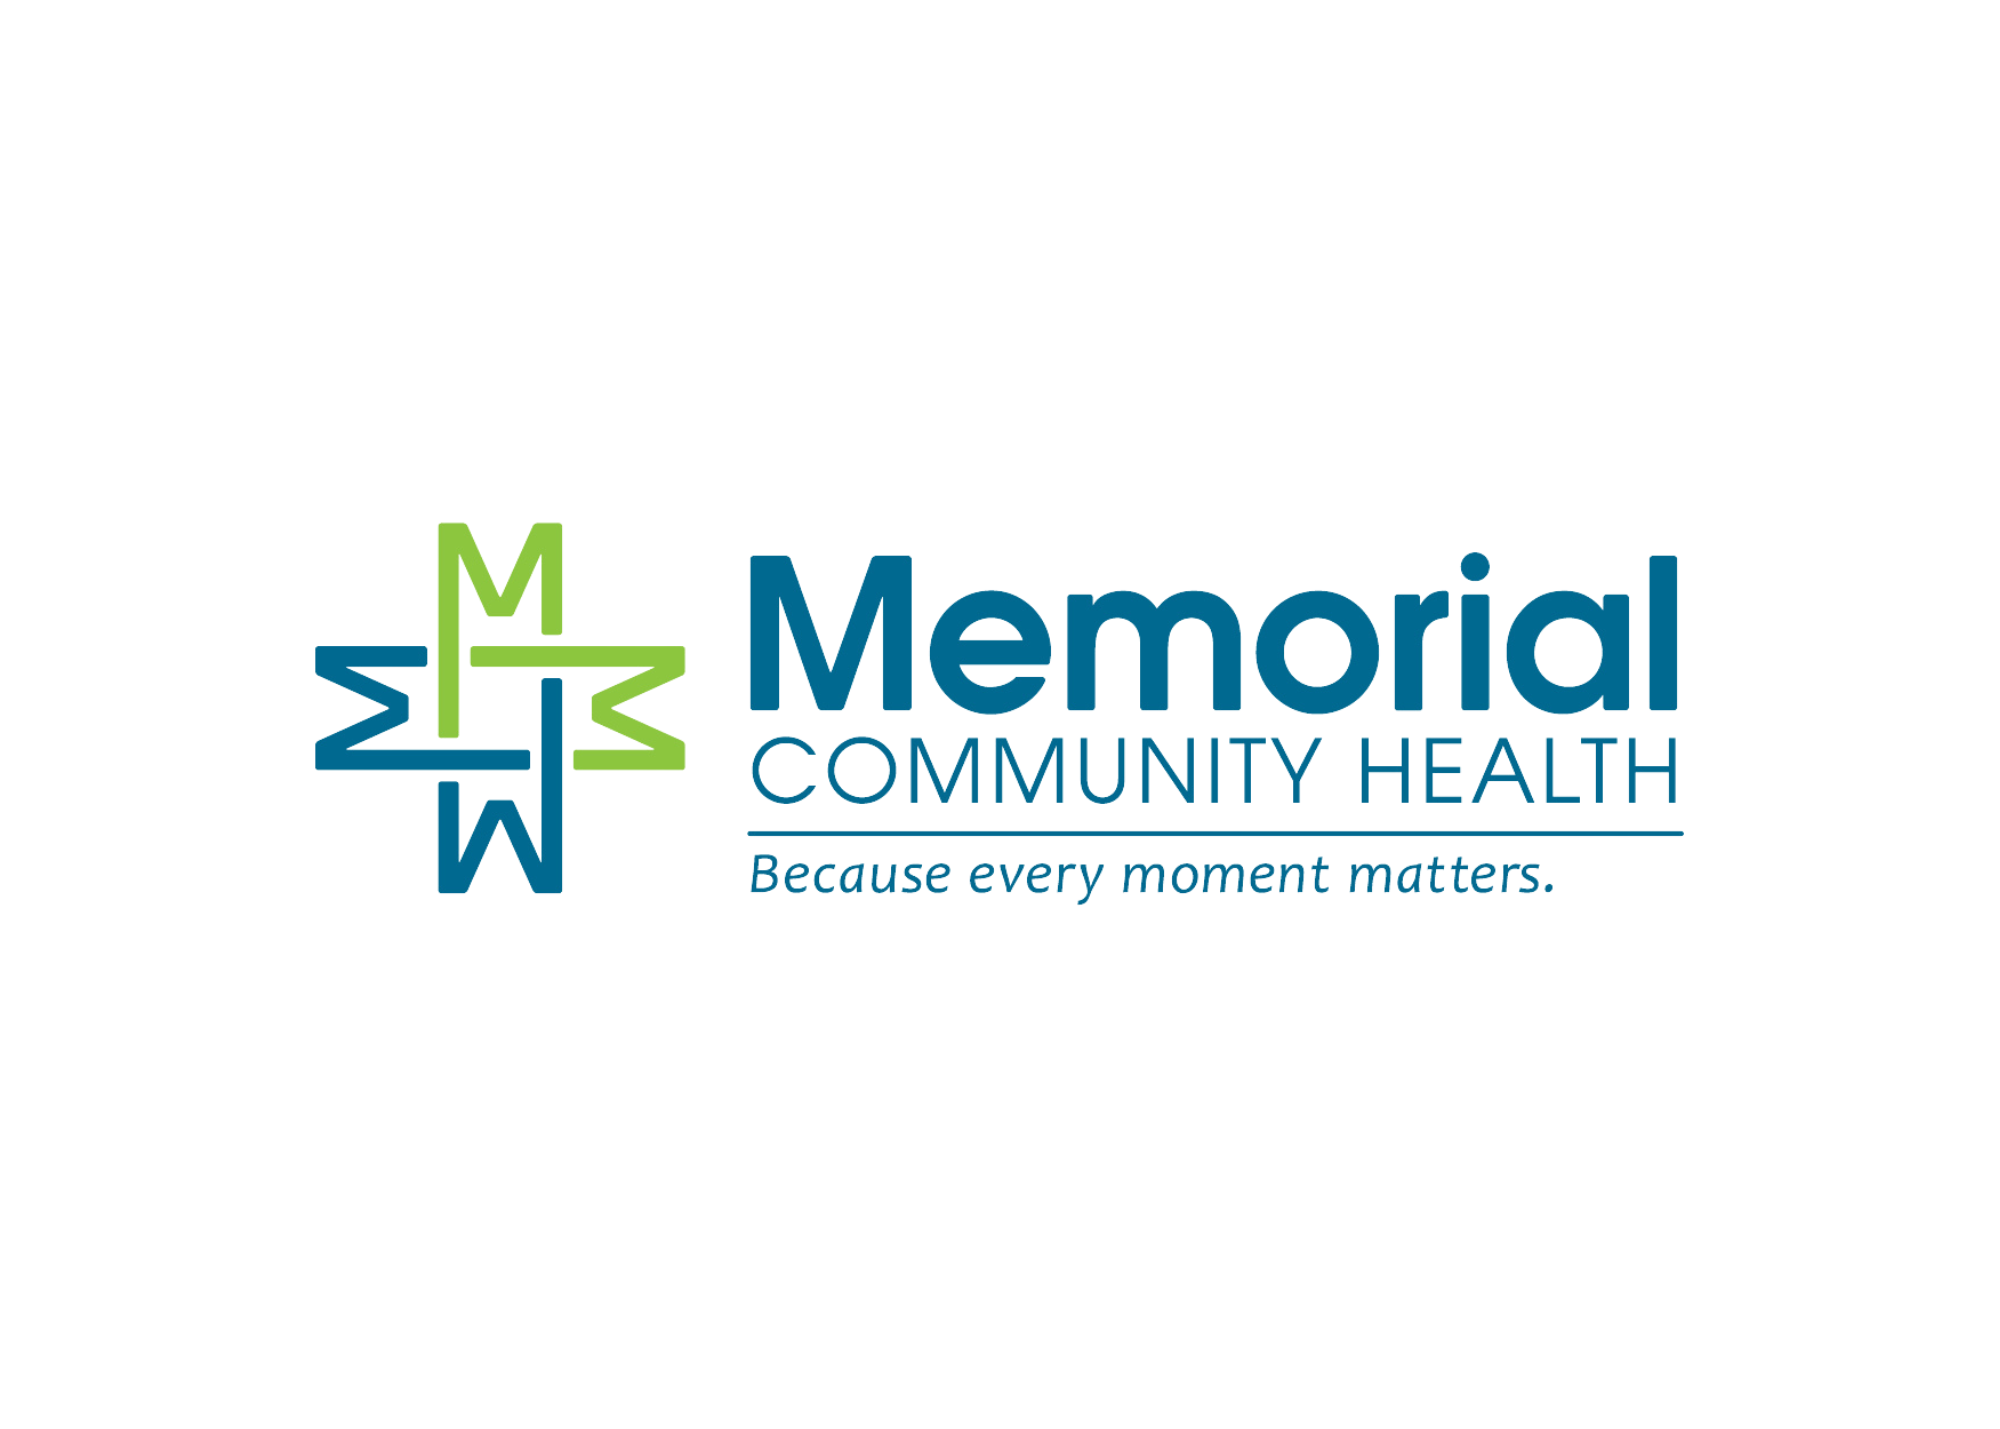 Memorial Community Health